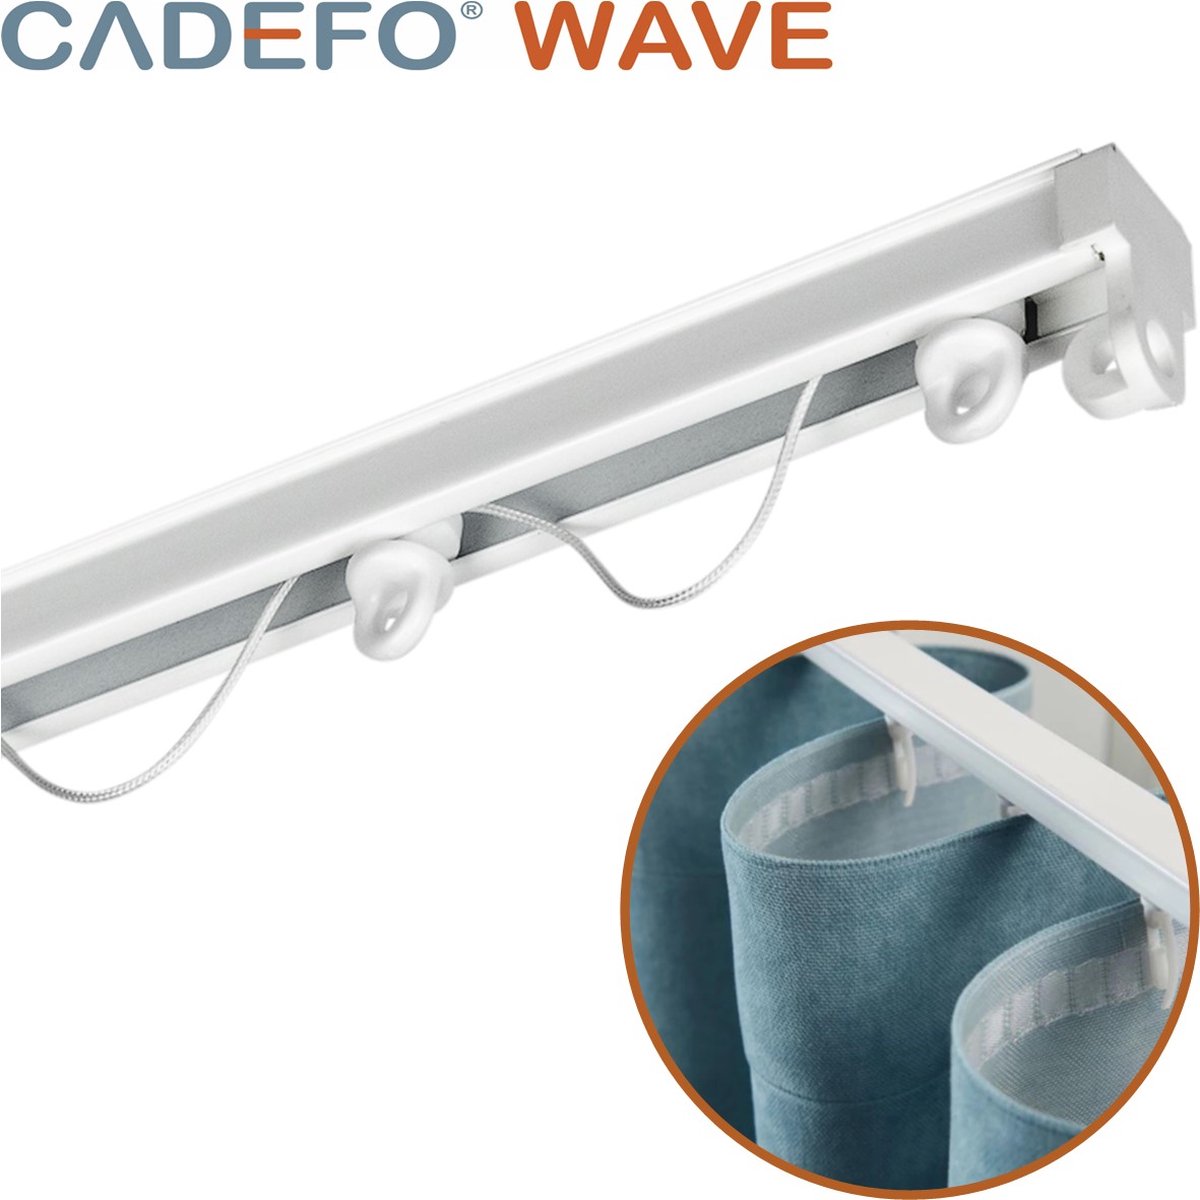 CADEFO WAVE (151 - 200 cm) Gordijnrails - Compleet op maat! - UIT 1 STUK - Leverbaar tot 6 meter - Plafondbevestiging - Lengte 155 cm